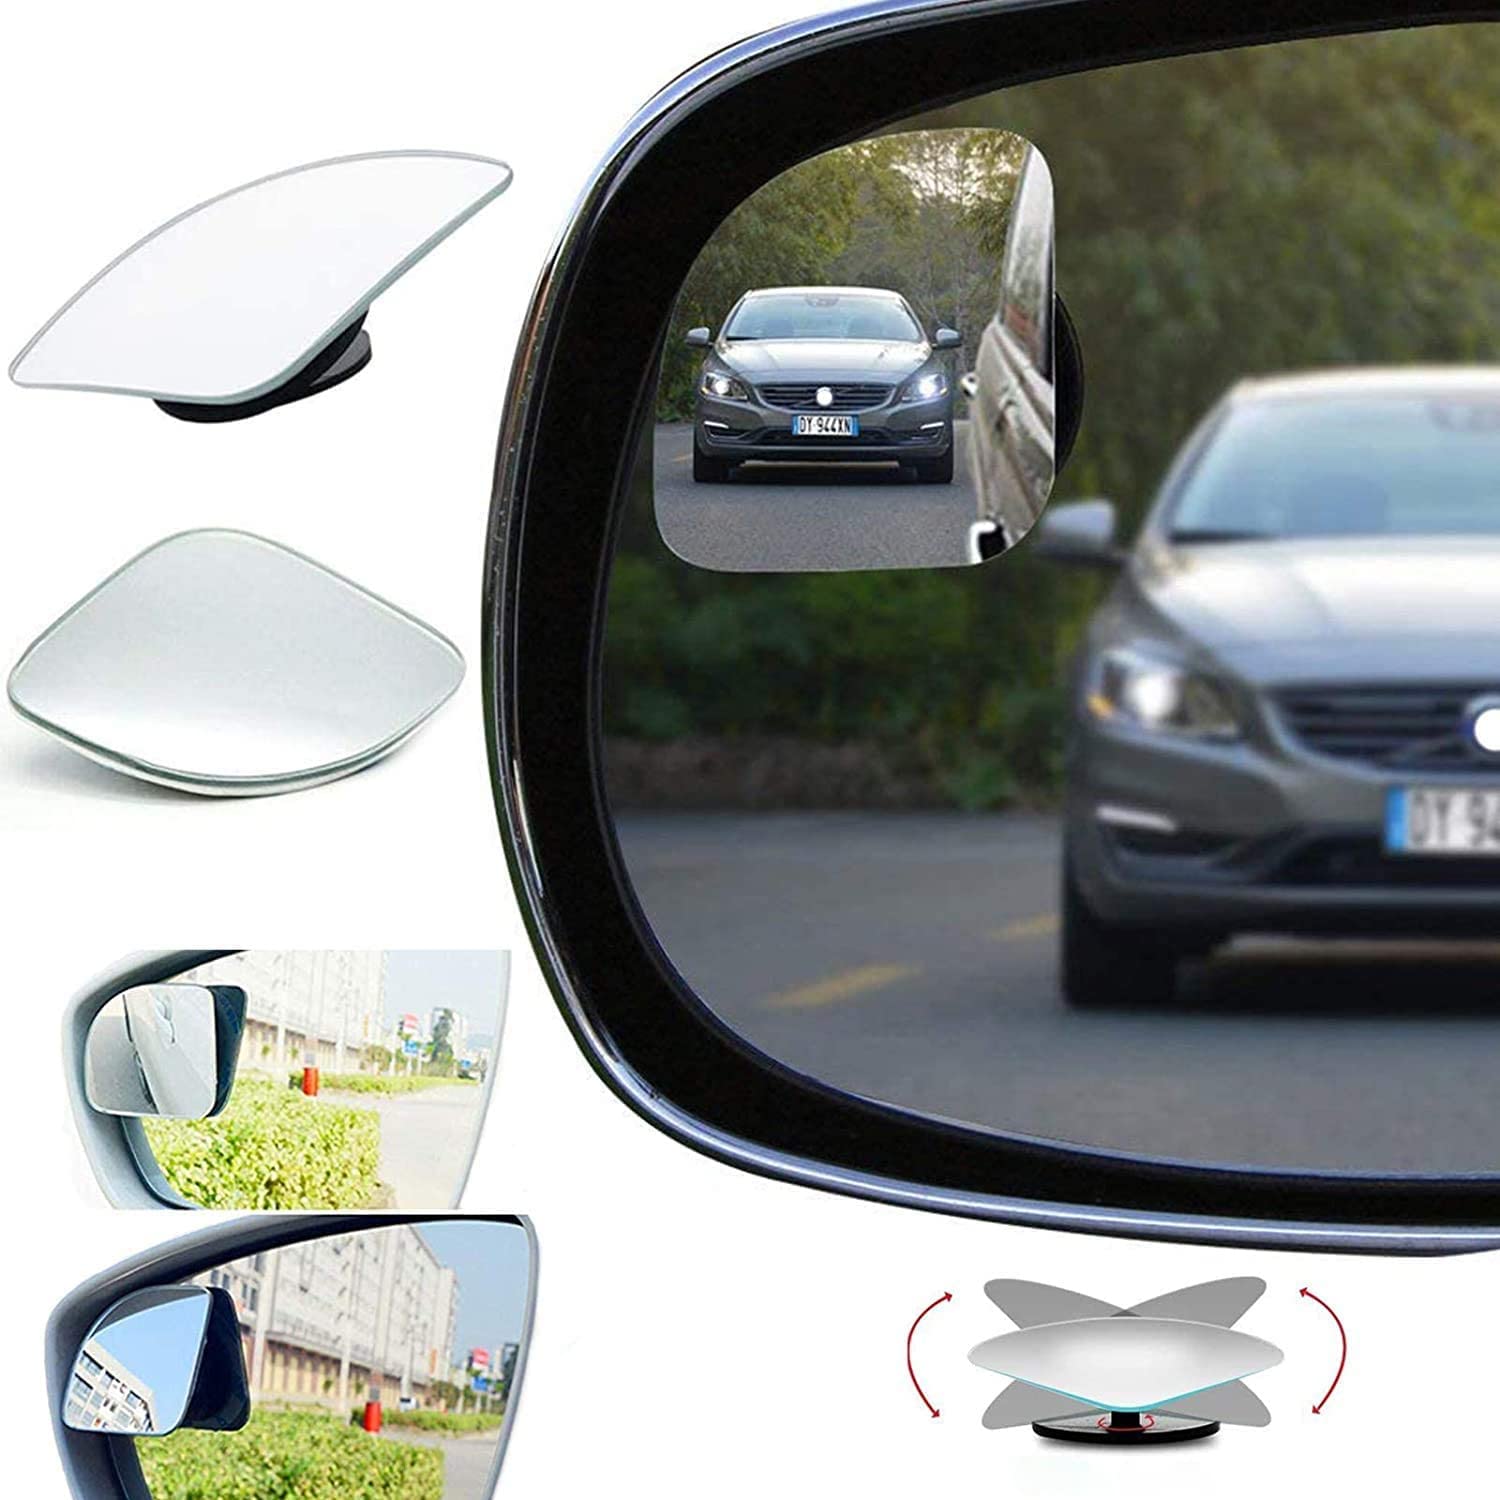 Auto totwinkel Spiegel,Blindspot Spiegel High Definition 360 Grad Einstellbare Auto Rückspiegel Weitwinkel Selbstklebende Blindspiegel für alle Autospiegel (2 Pcs) von ALLILUYAA